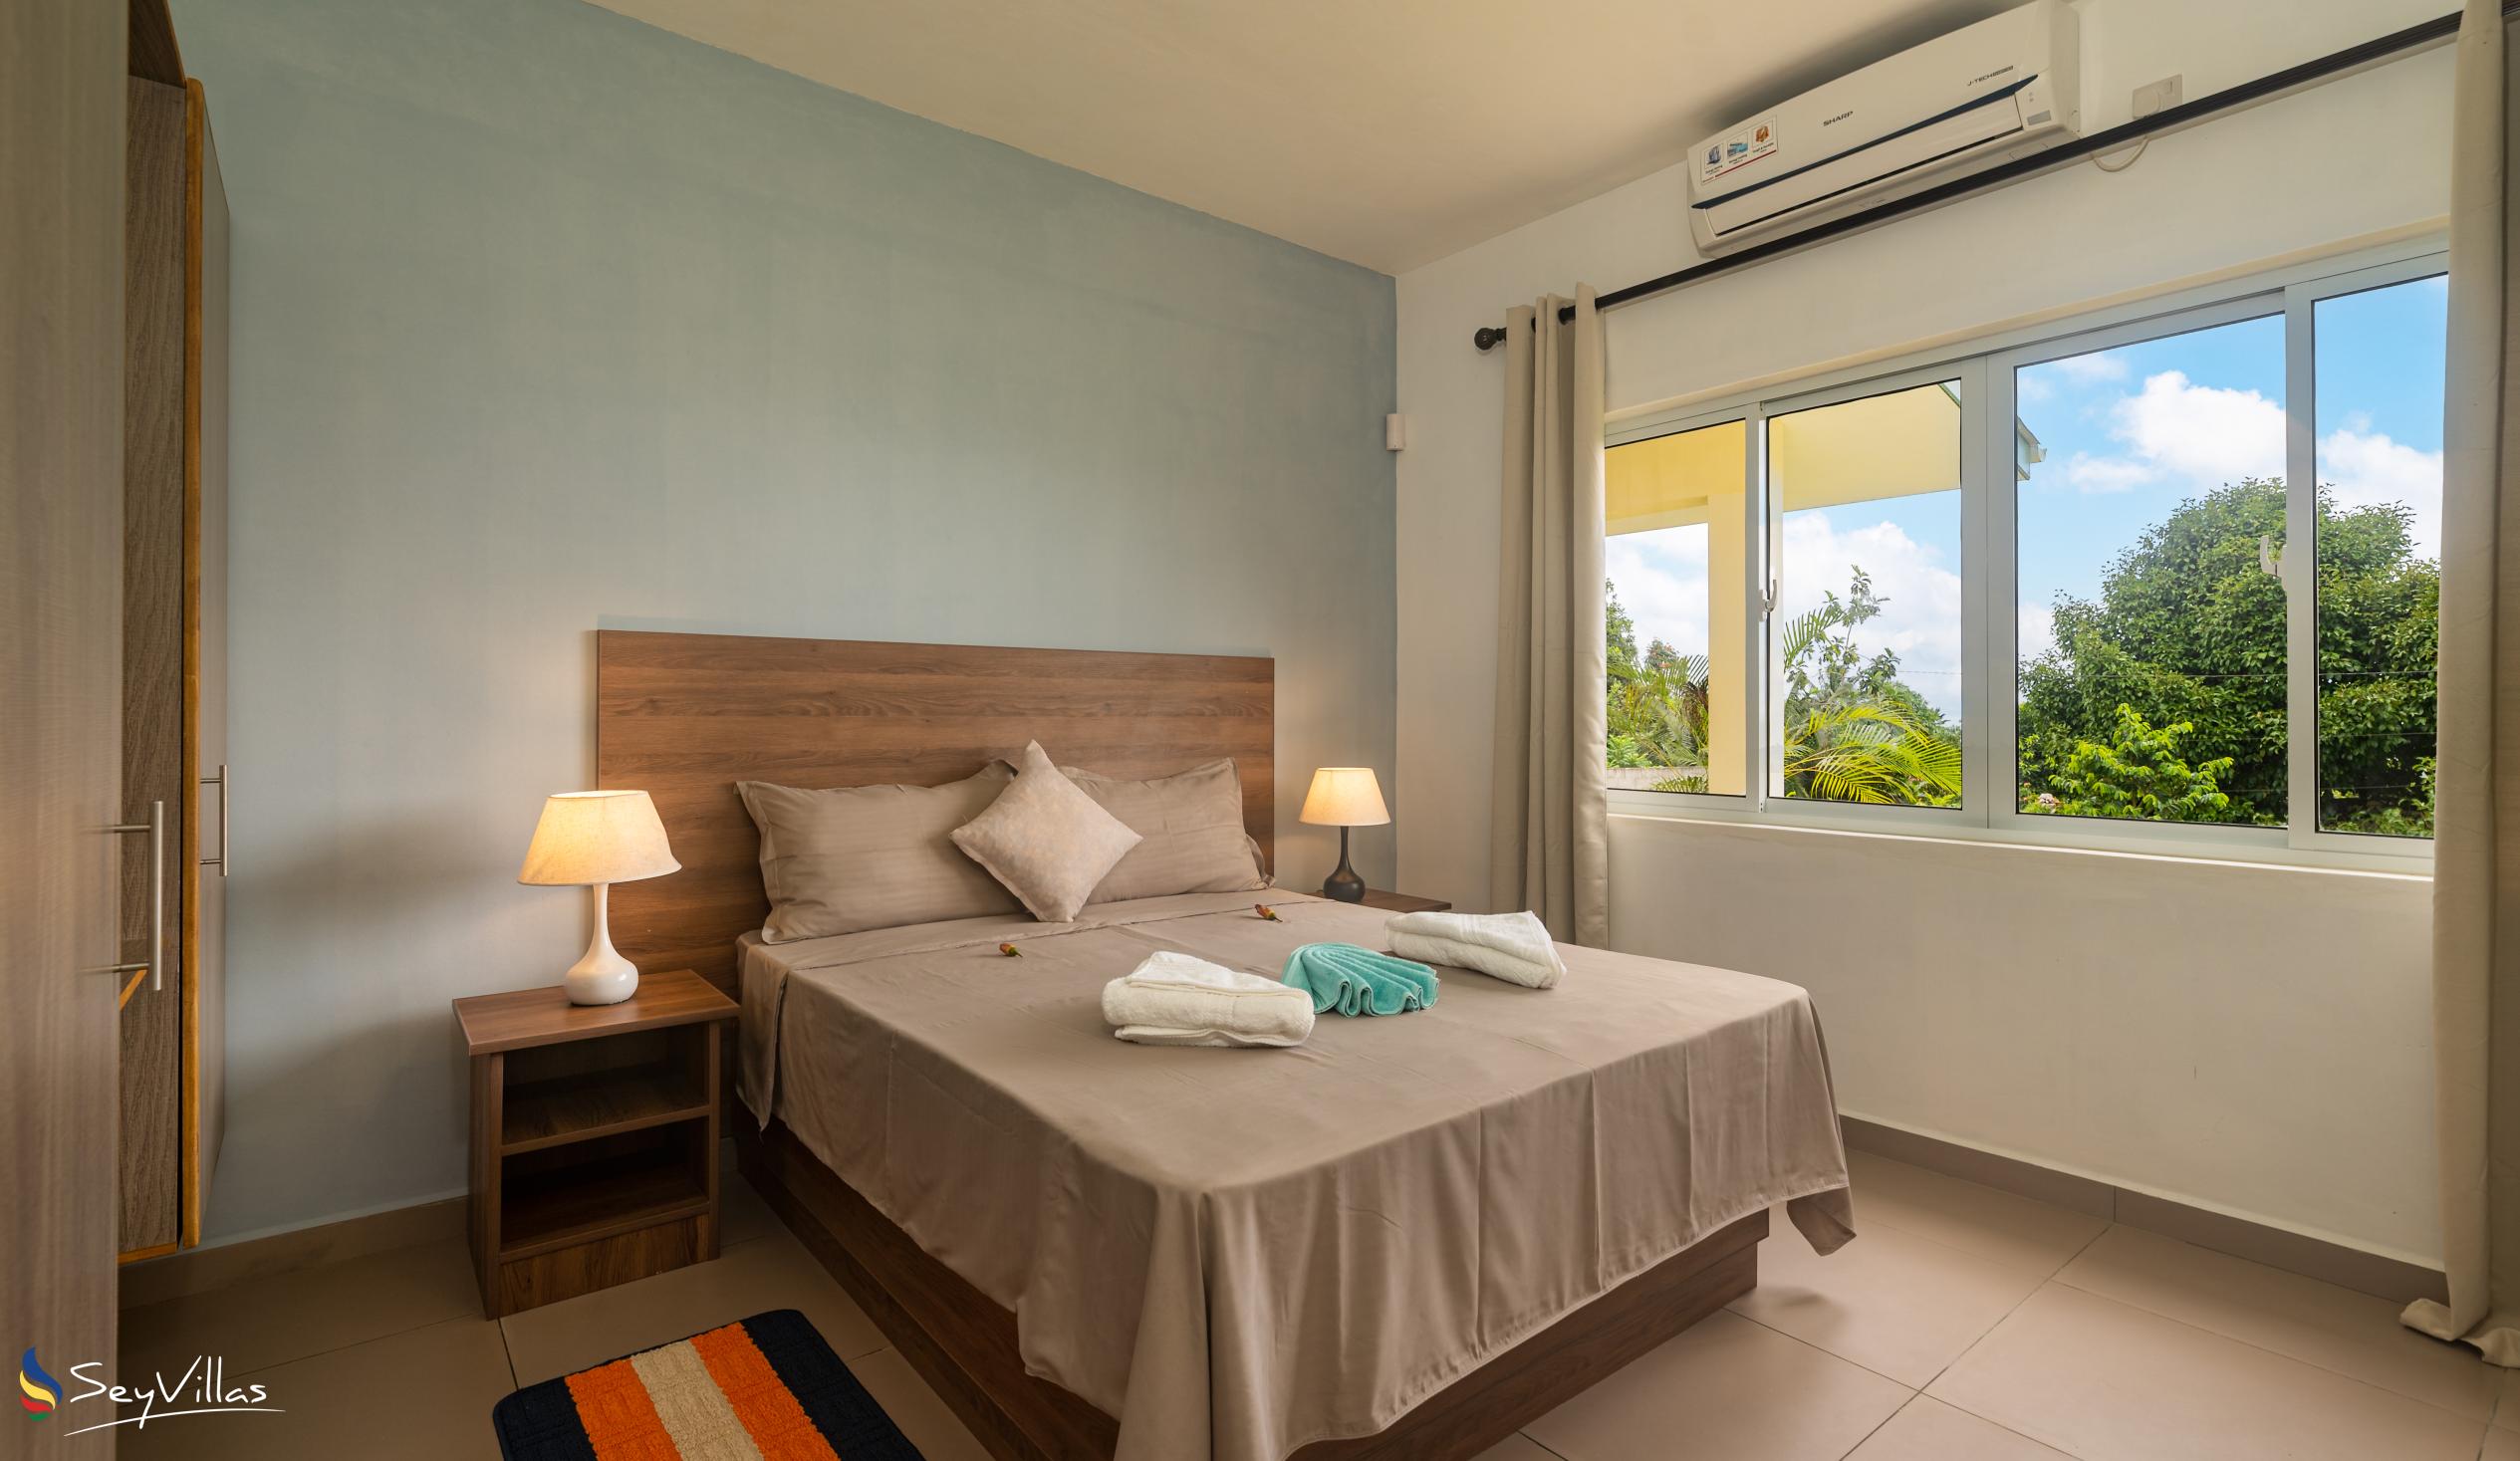 Foto 55: Maison Dora - Villa 2 chambres - Mahé (Seychelles)